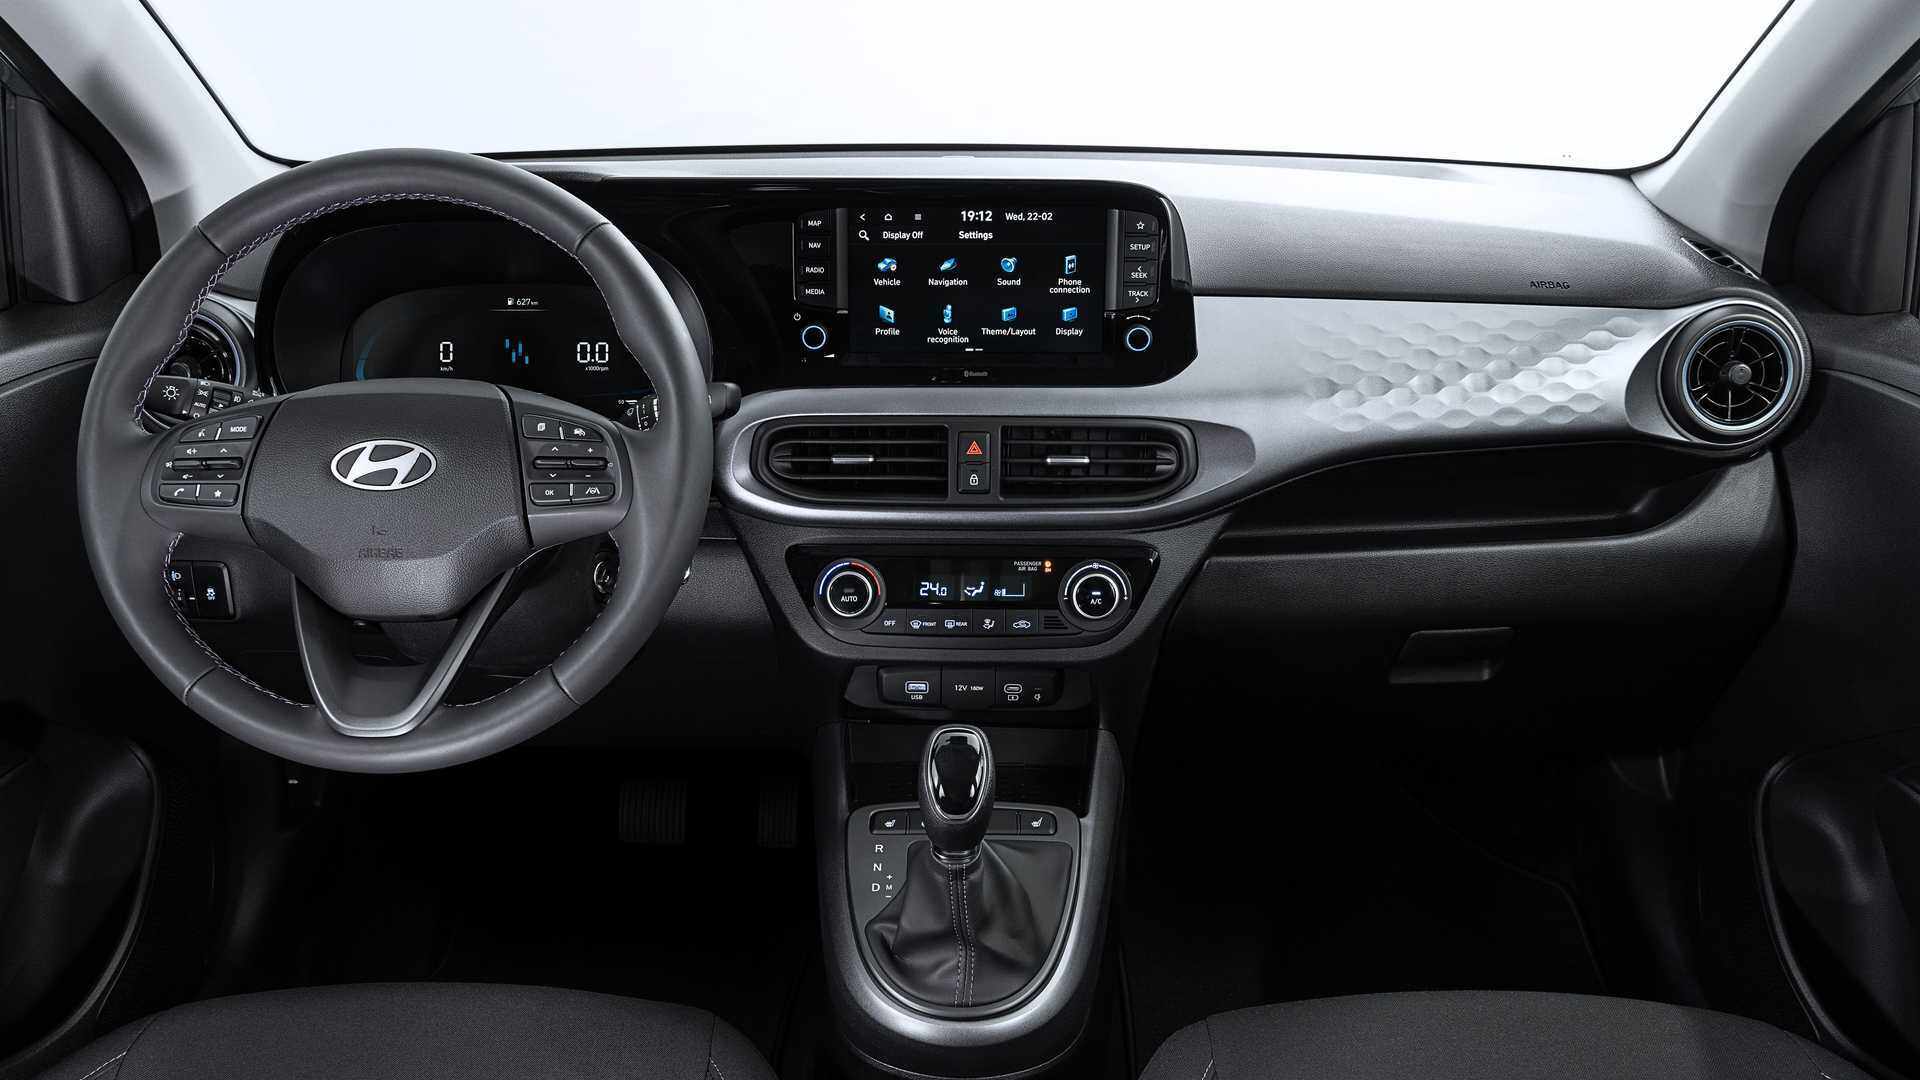 Thiết kế tổng thể nội thất Hyundai Grand i10 2023 không khác biệt đời trước. Tại châu Âu, các phiên bản tiêu chuẩn được trang bị bảng đồng hồ dạng màn hình 4,2 inch, màn hình trung tâm 8 inch hỗ trợ Apple CarPlay/ Android Auto không dây